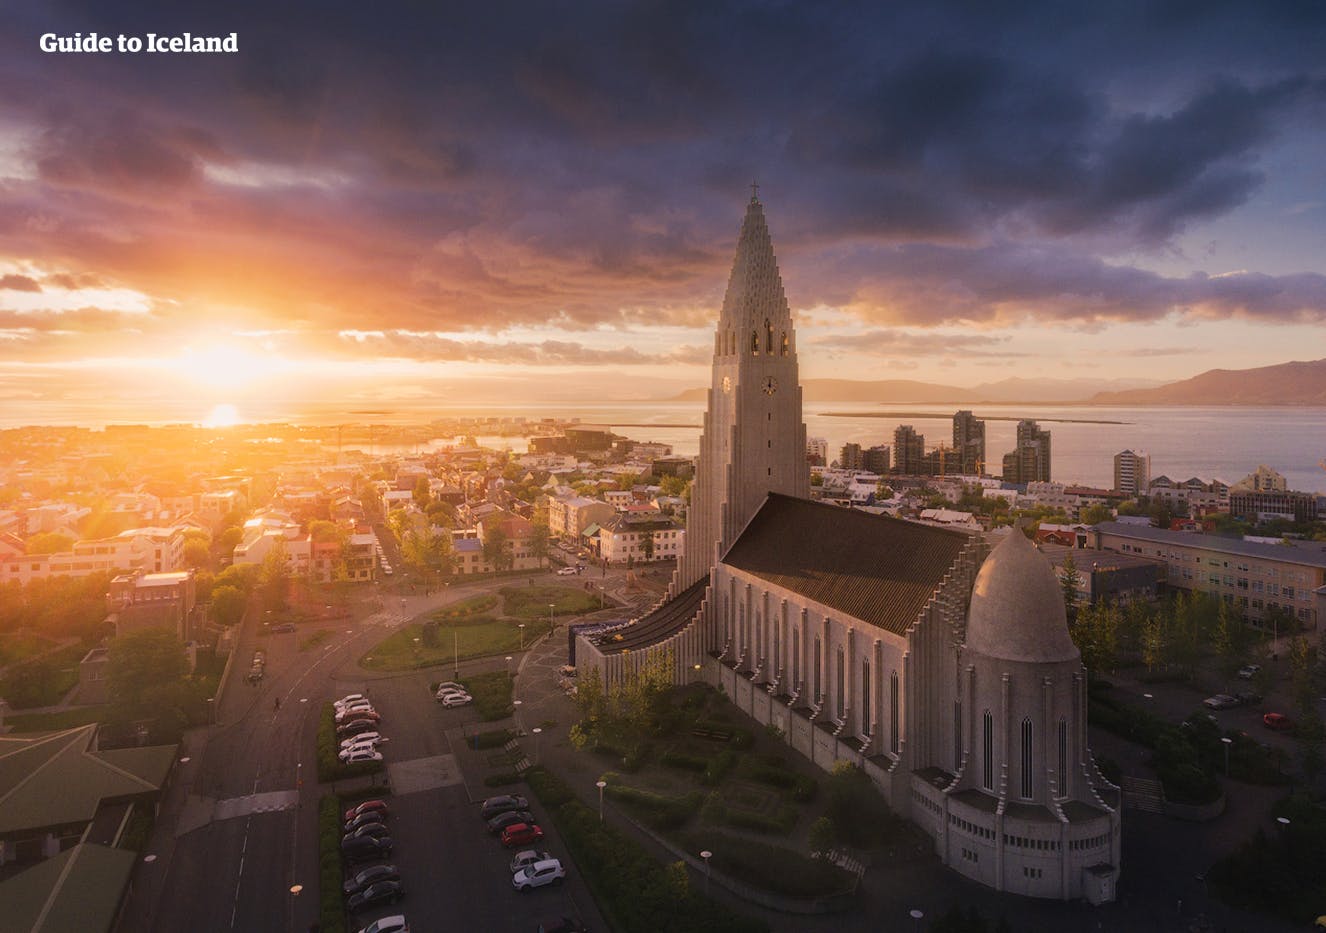 Reykjavík to kolorowa, kulturalna i ekscentryczna stolica.